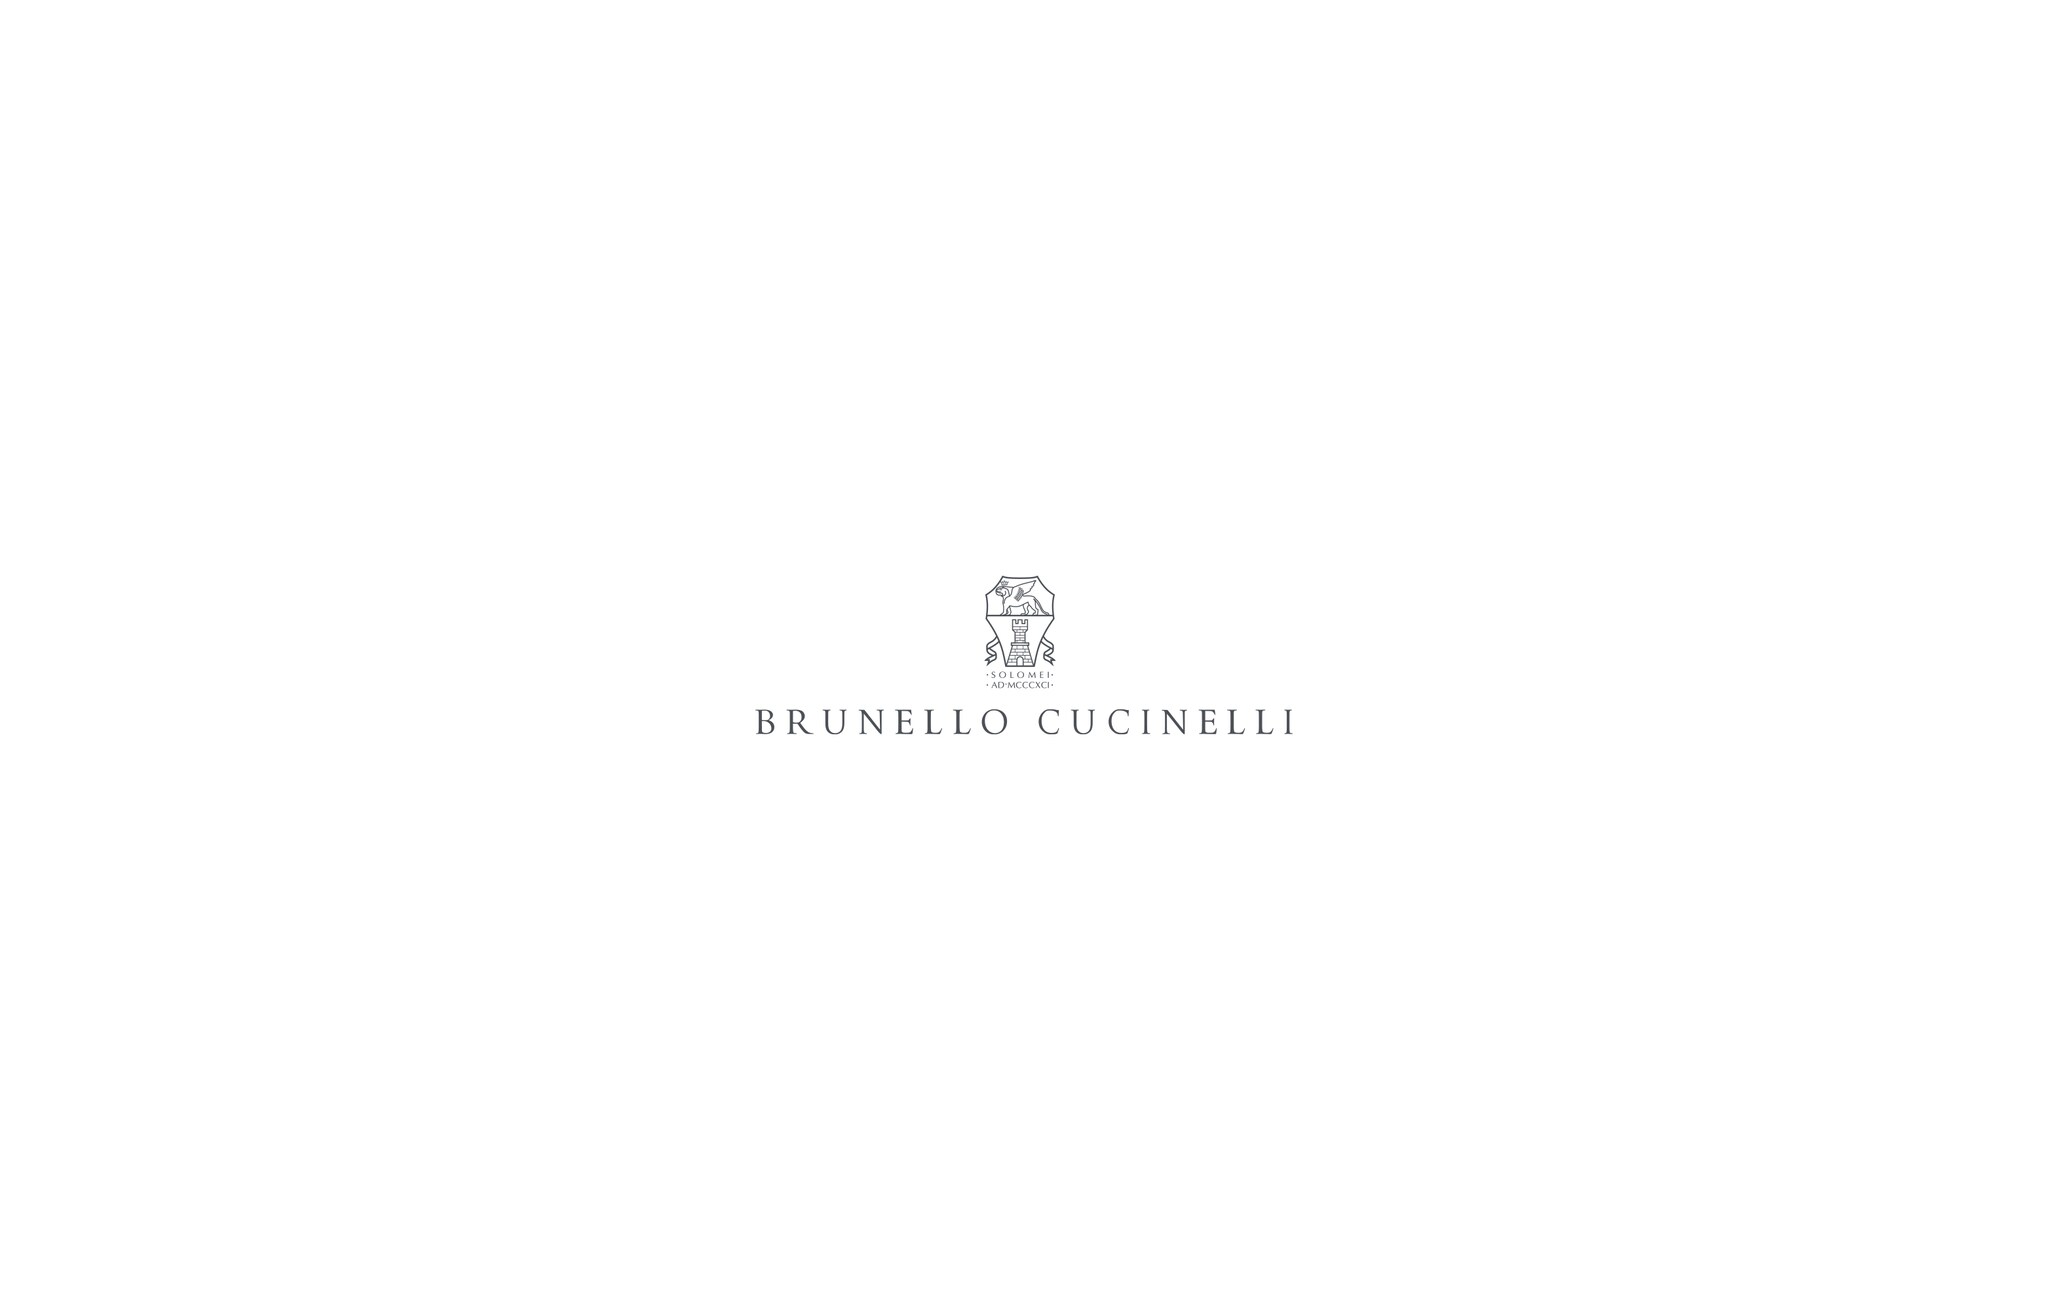  装饰镶珠的羽绒服 深灰 女款 - Brunello Cucinelli 